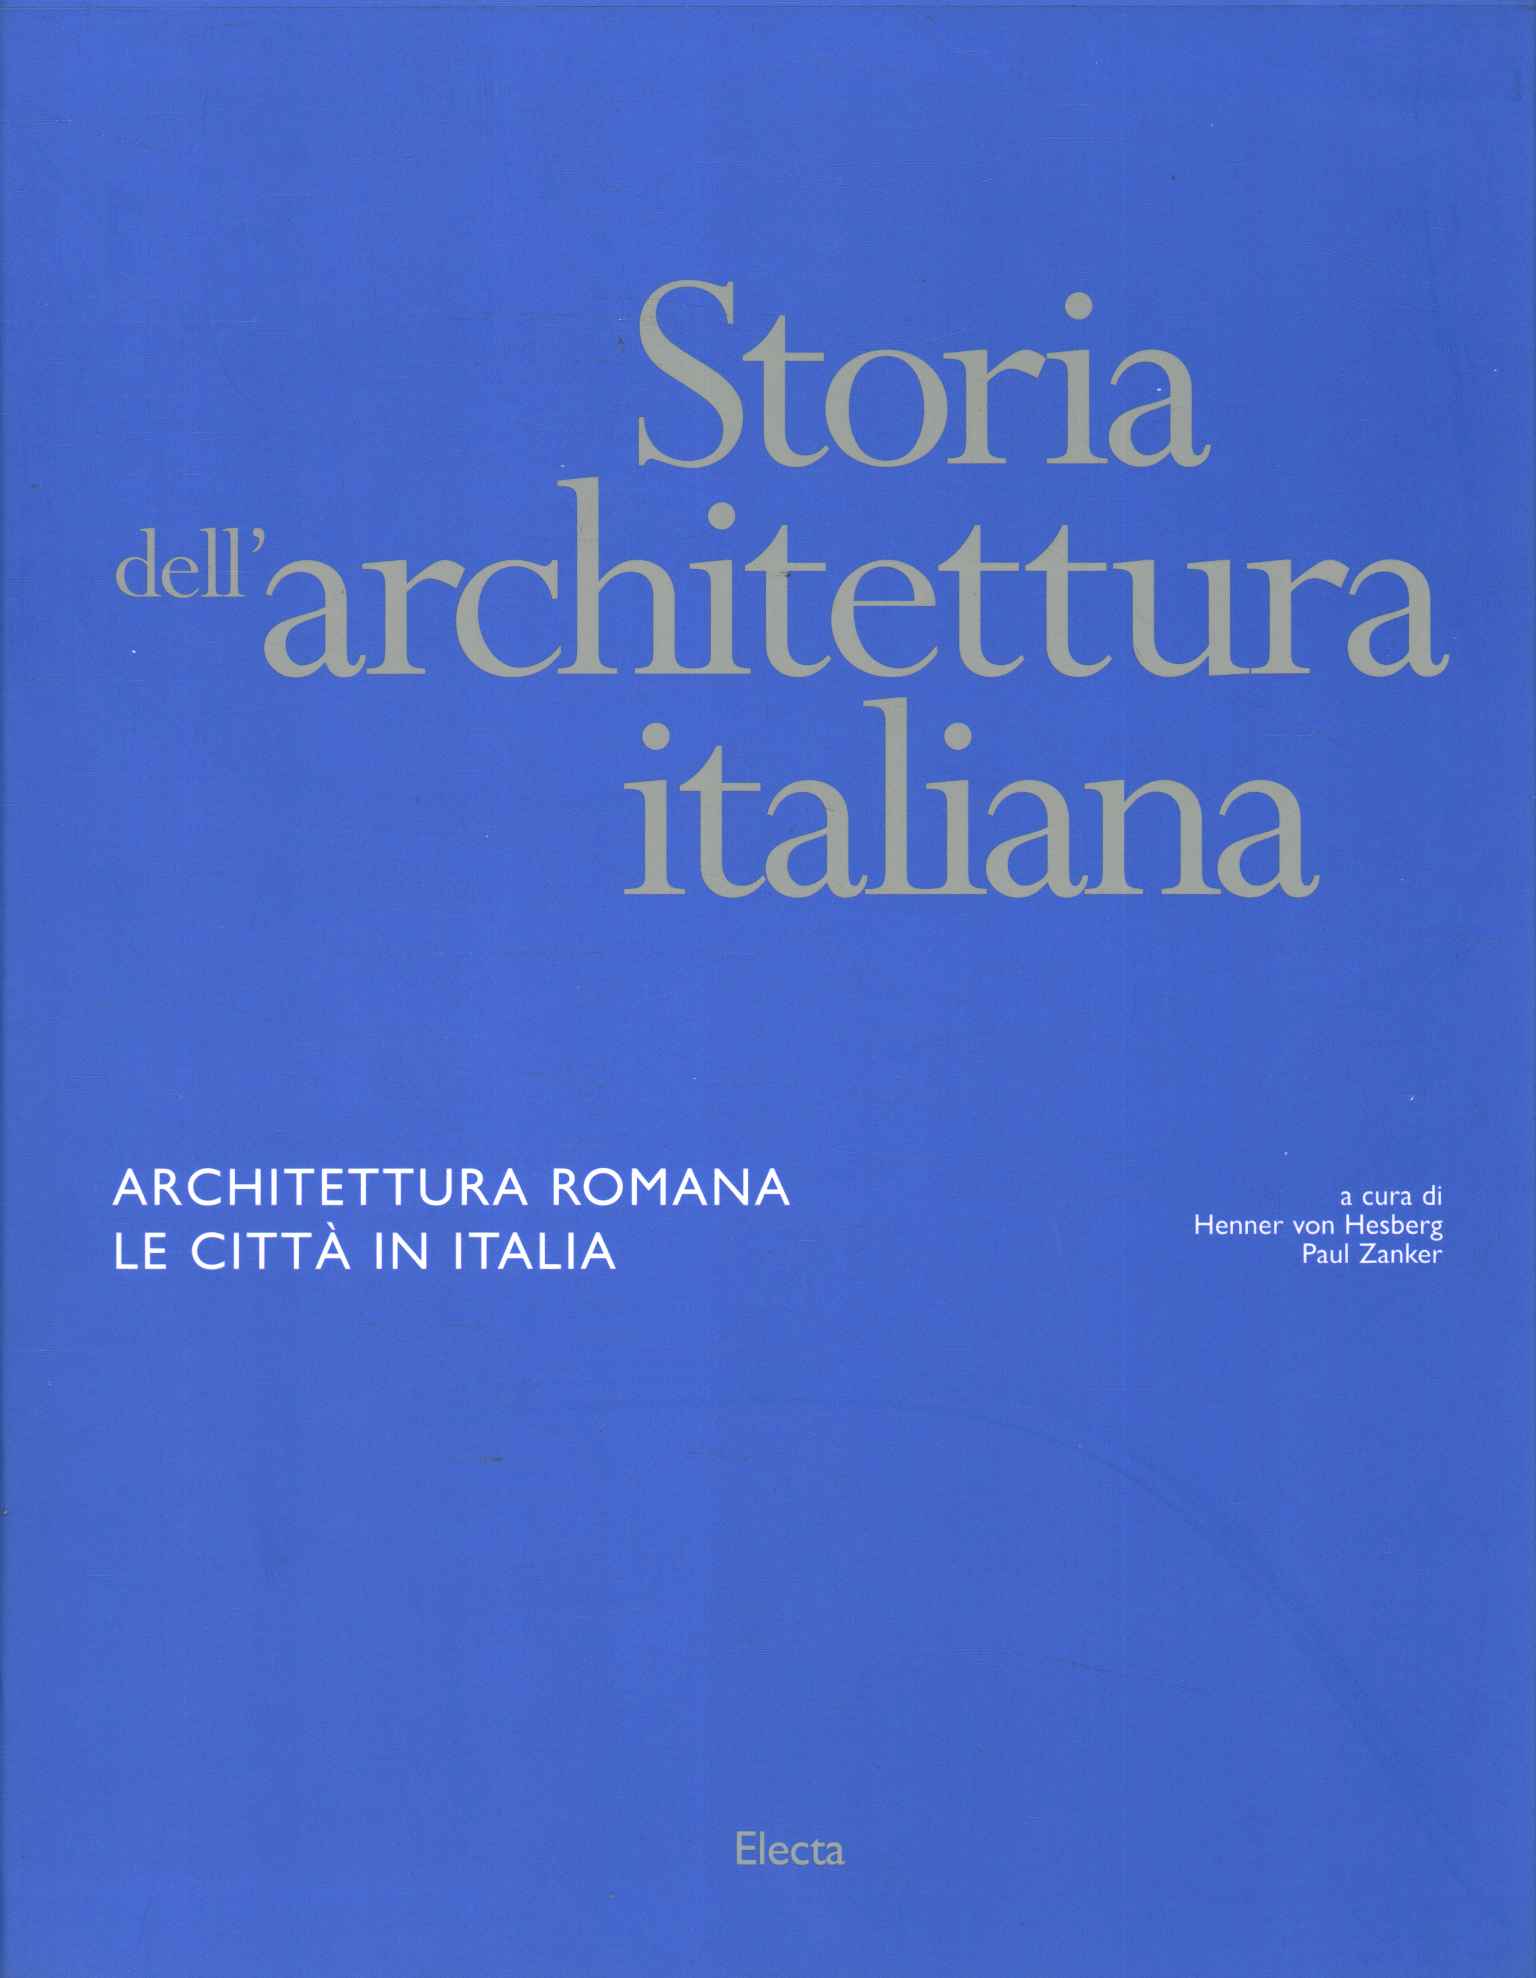 Storia dell'architettura italiana.%,Storia dell'architettura italiana.%,Storia dell'architettura italiana.%